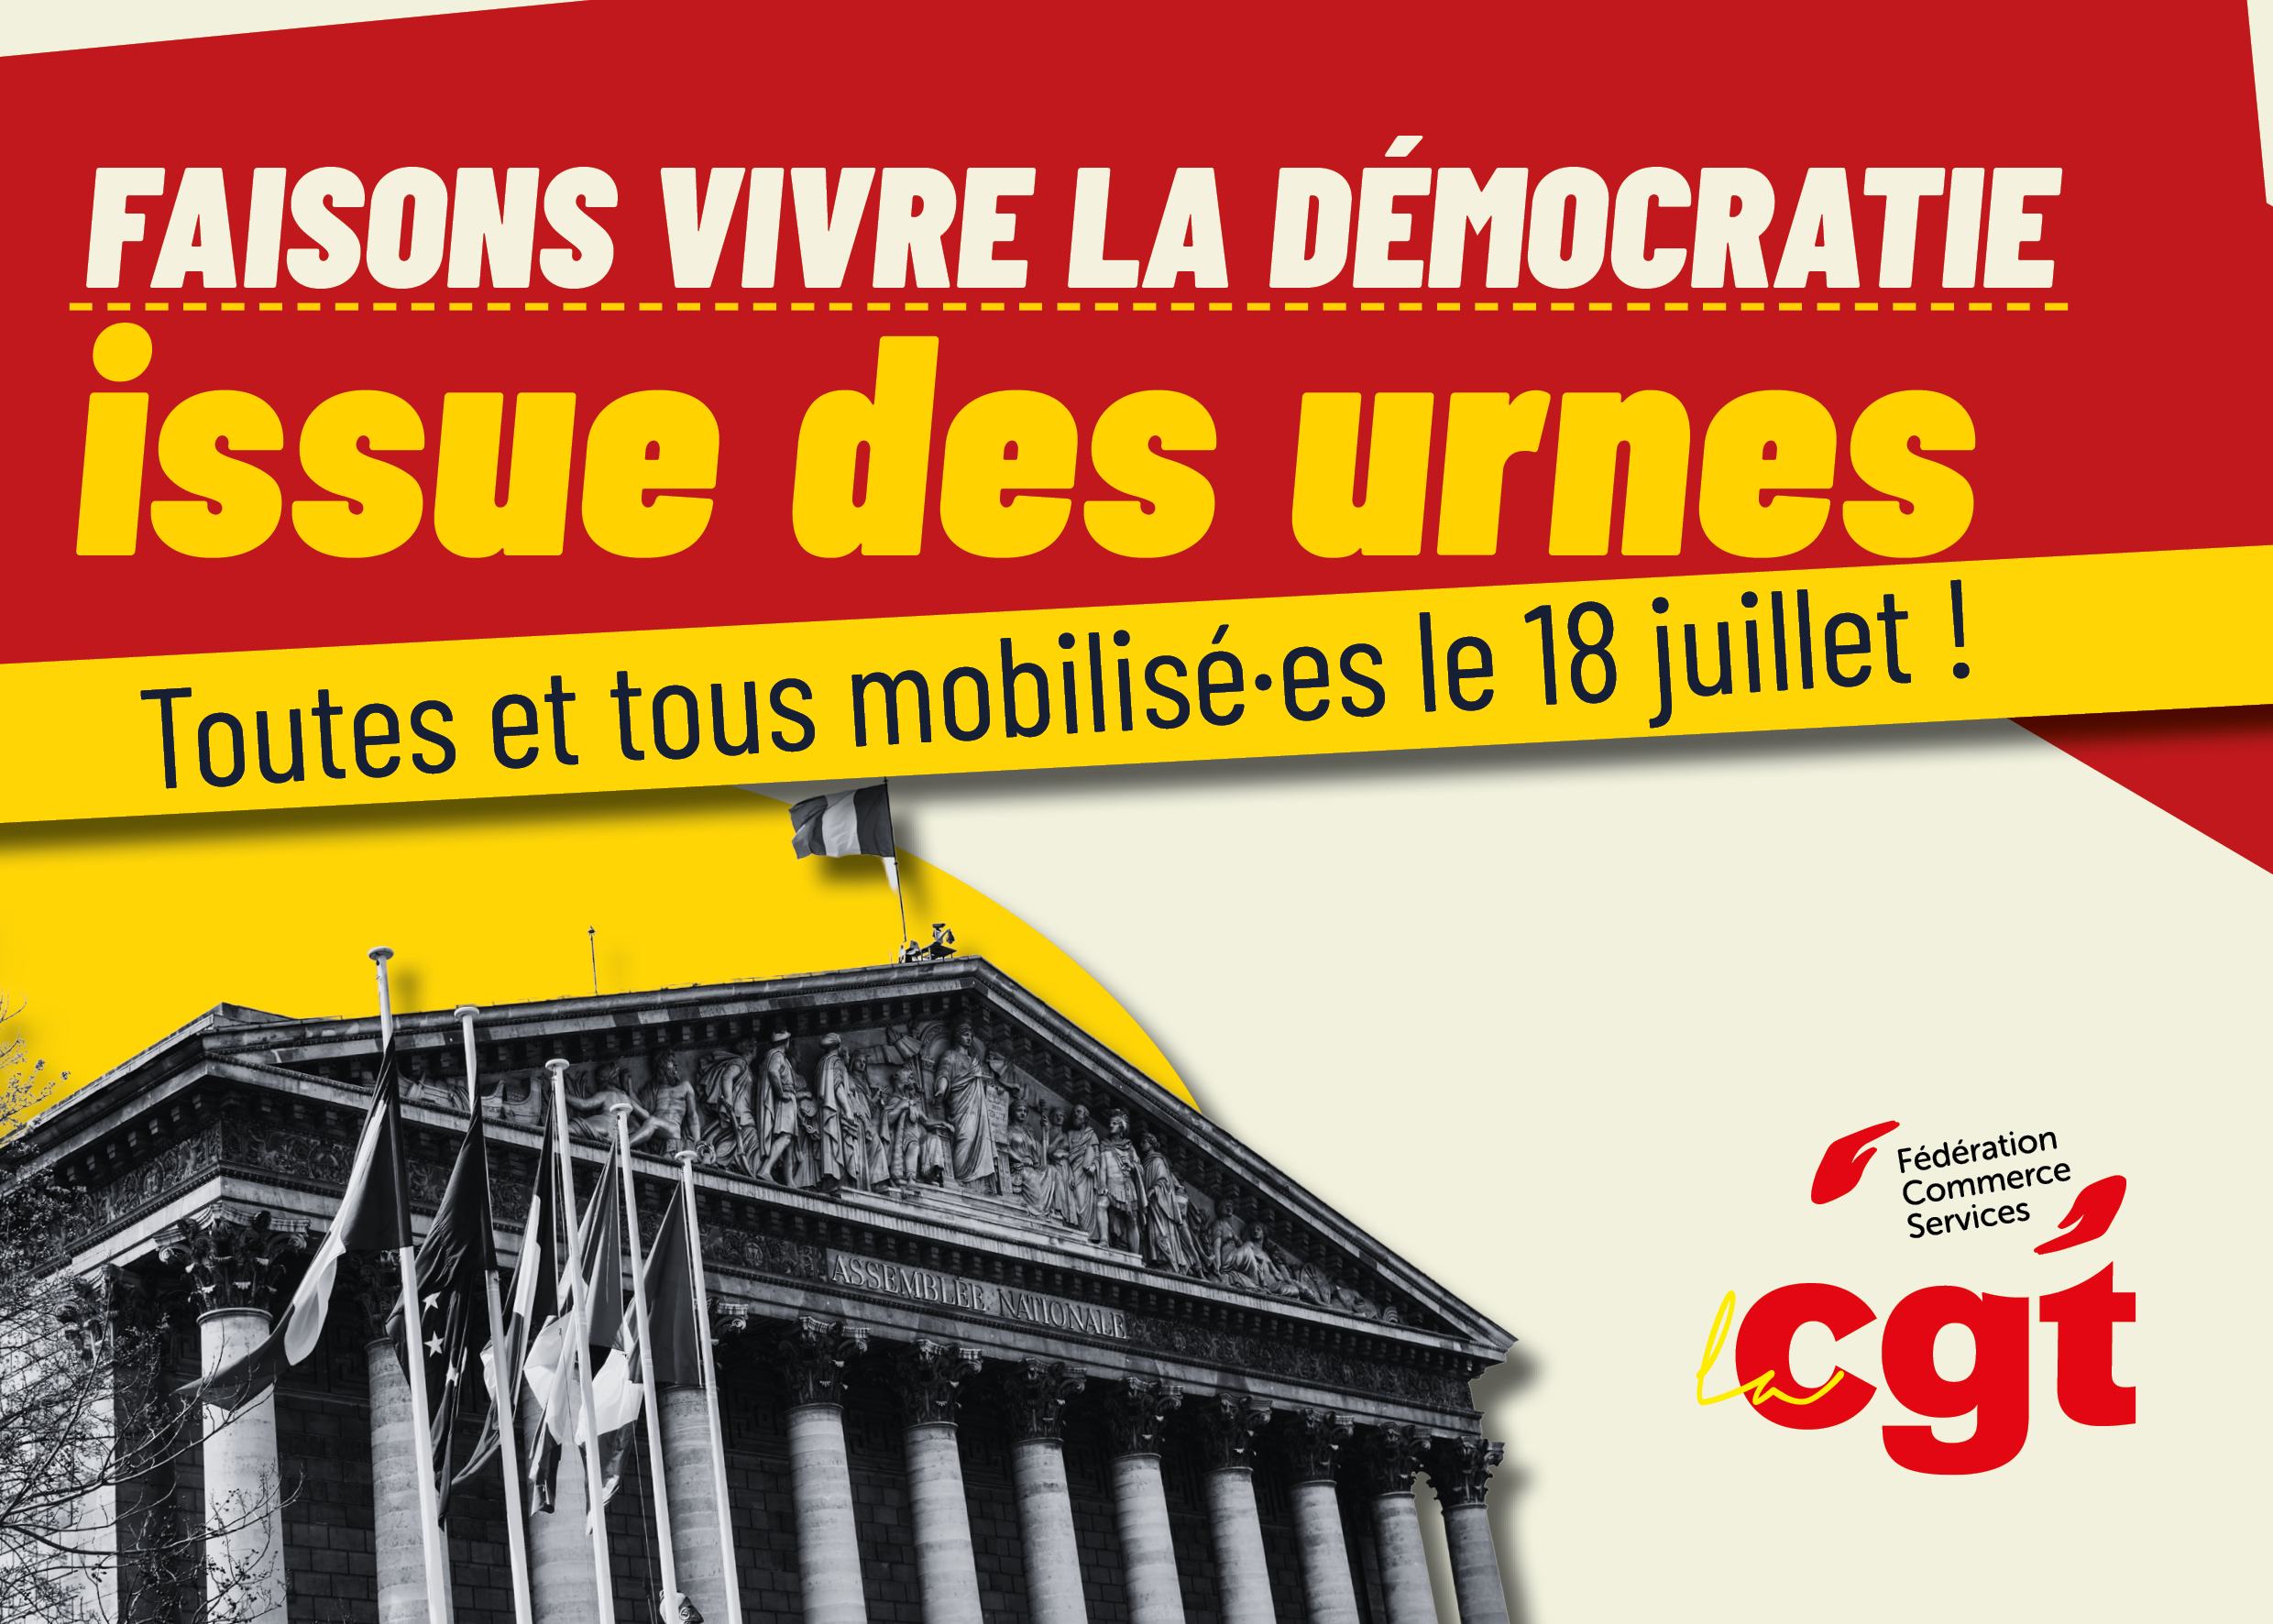 Faisons vivre la démocratie issue des urnes : Toutes et tous mobilisé·es le 18 juillet !